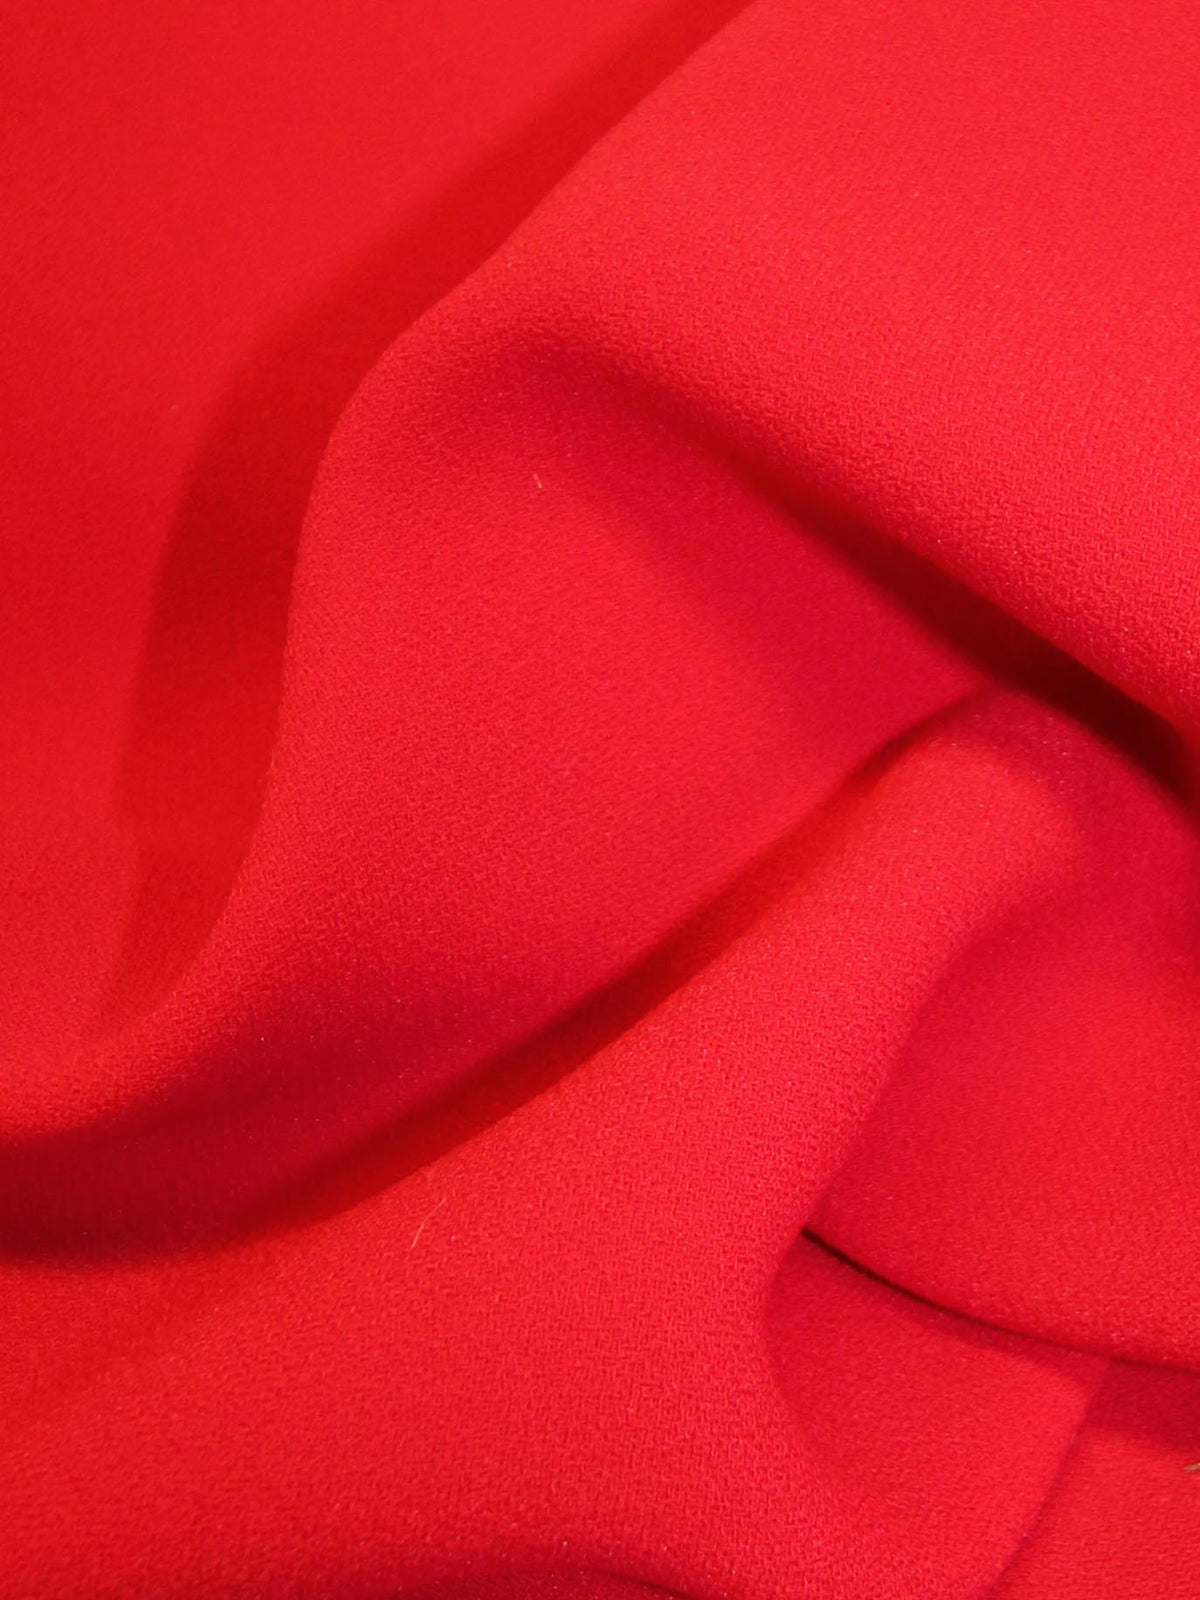 Roter Polyesterkrepp – Kuriosität